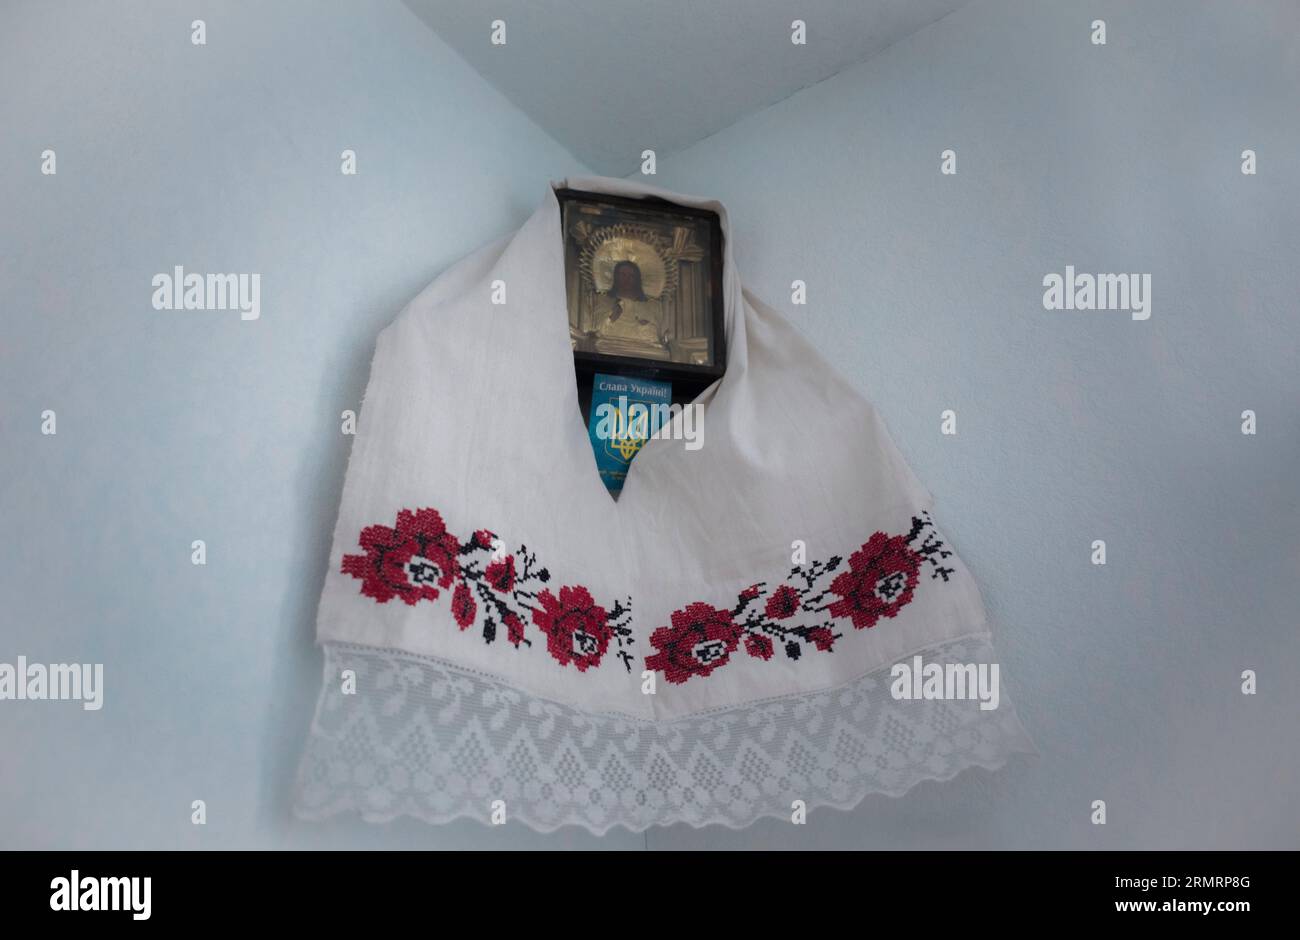 Tradizionale angolo sacro nelle case ucraine - icona ortodossa, tridente e asciugamano di lino fatto a mano, ricamato da fili rossi e neri Foto Stock